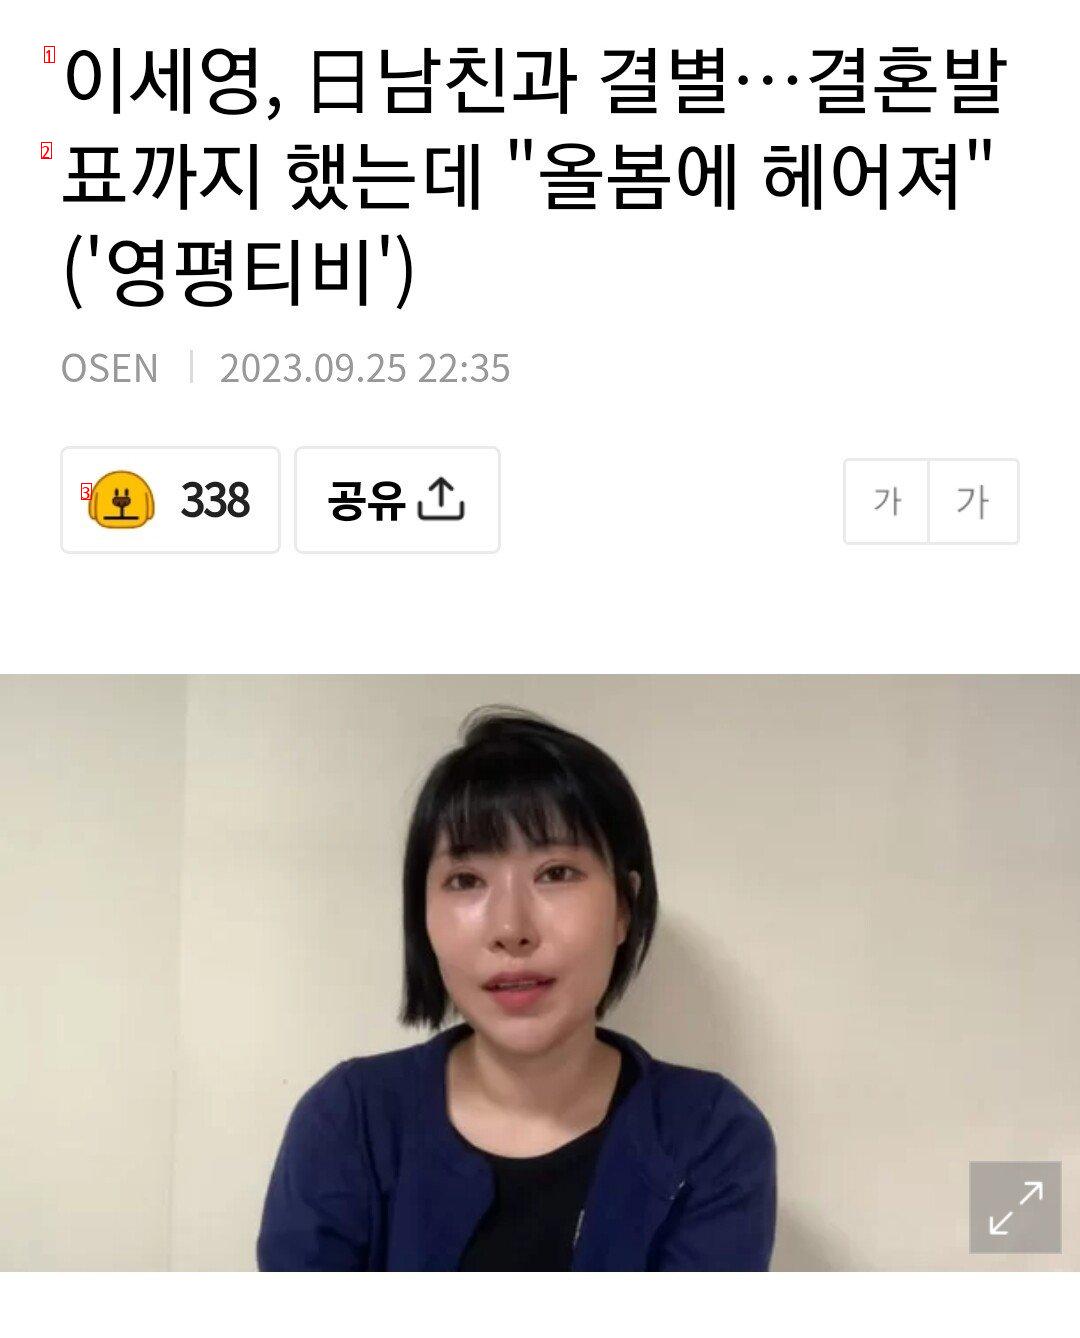 이세영, 日남친과 결별…결혼발표까지 했는데 """"올봄에 헤어져""""